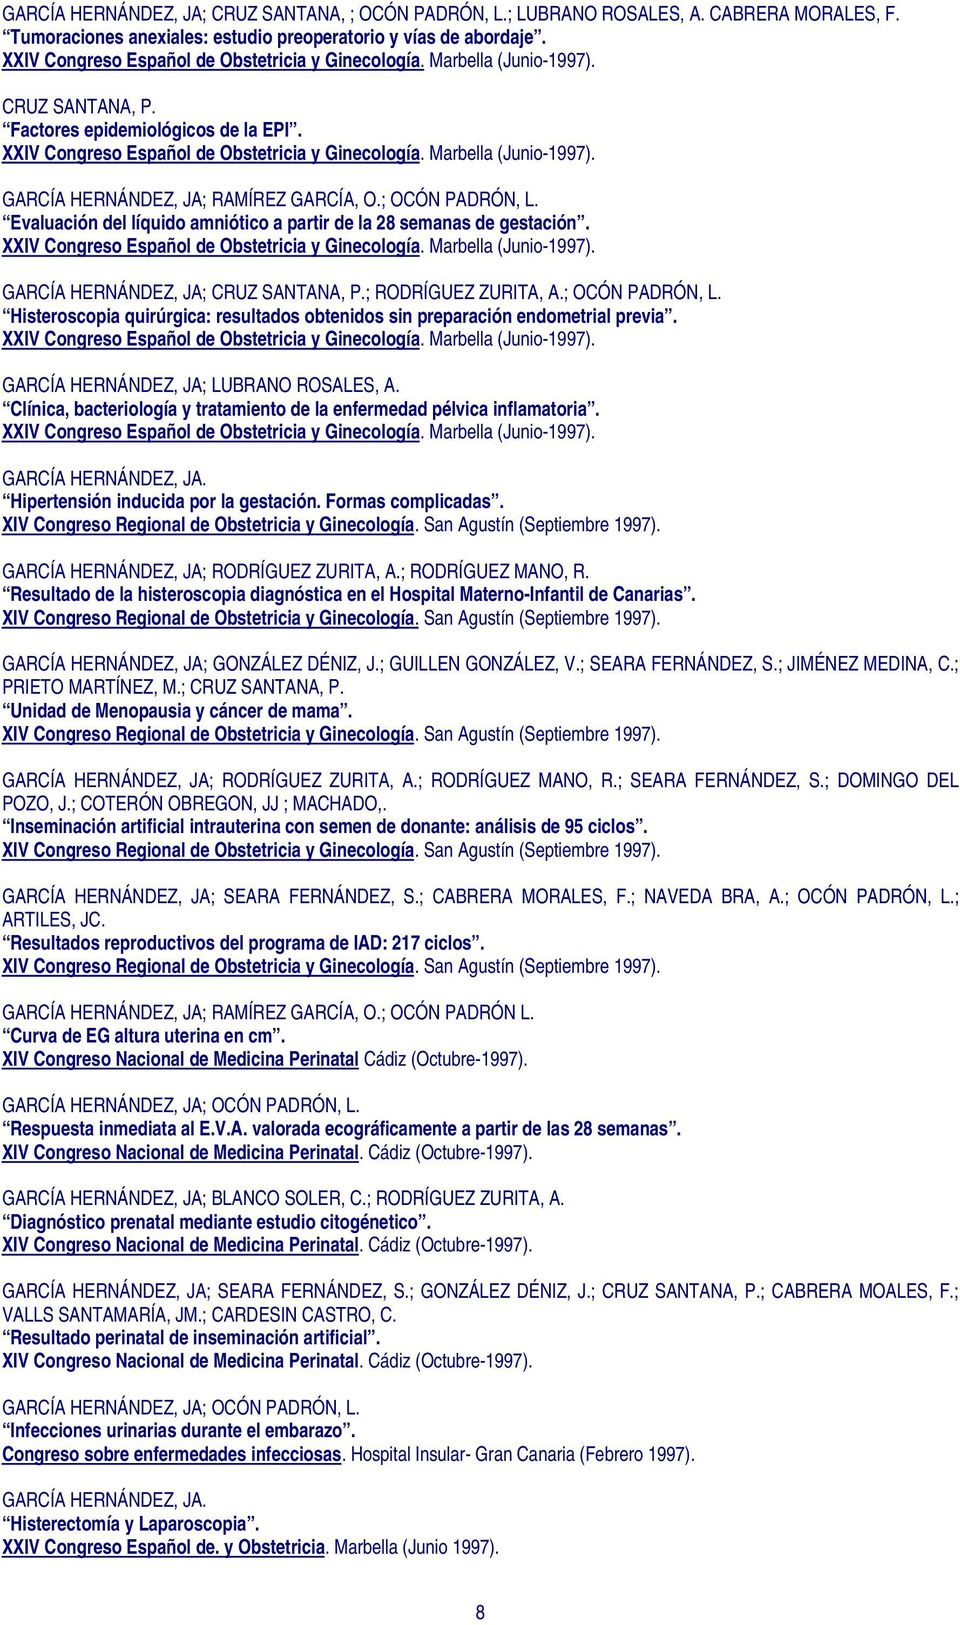 Evaluación del líquido amniótico a partir de la 28 semanas de gestación. XXIV Congreso Español de Obstetricia y Ginecología. Marbella (Junio-1997). GARCÍA HERNÁNDEZ, JA; CRUZ SANTANA, P.